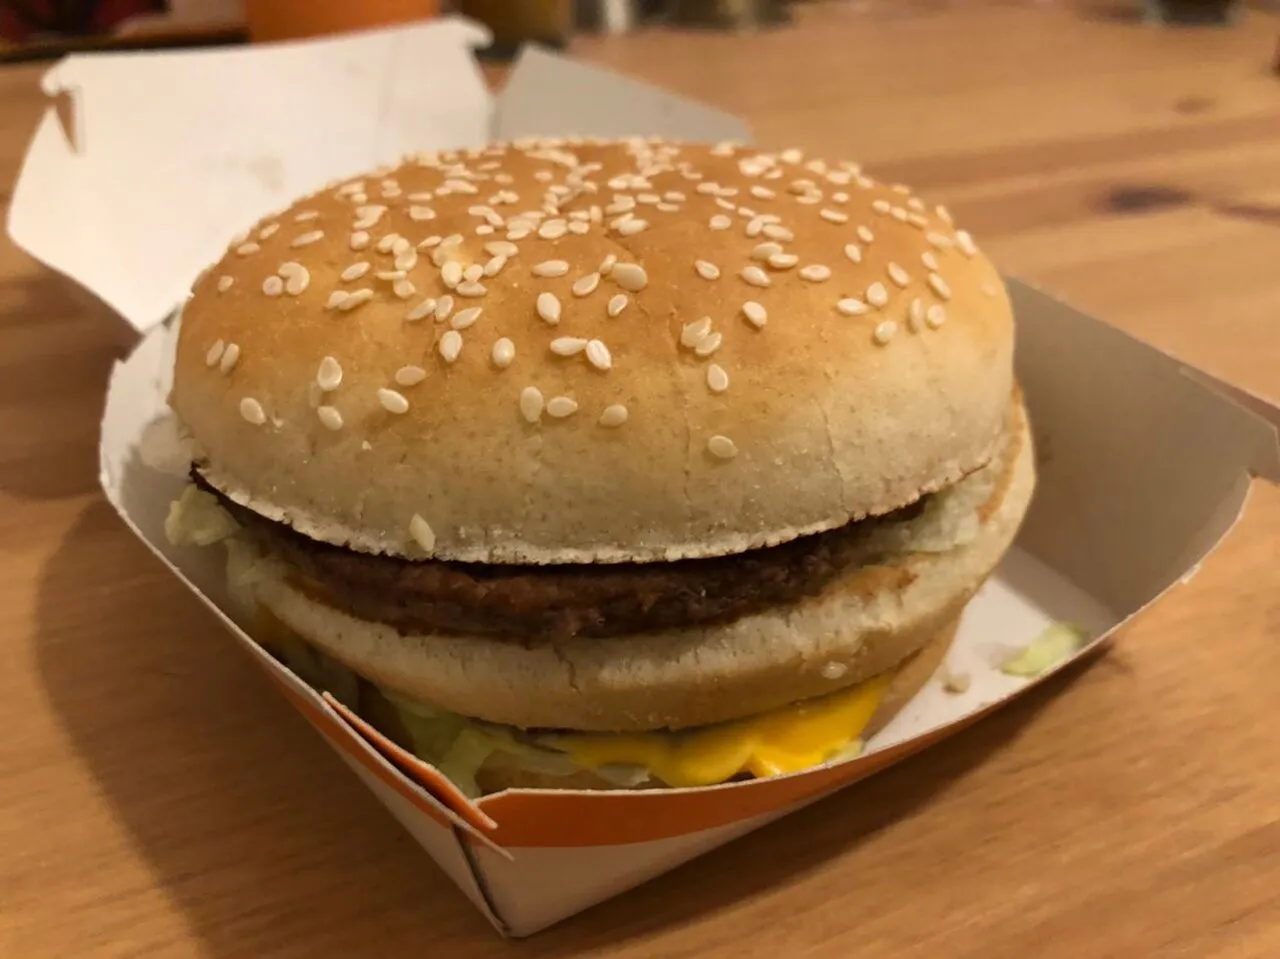 Рецепт: Гамбургеры как в Макдональдс - Многослойные вкусняшки!